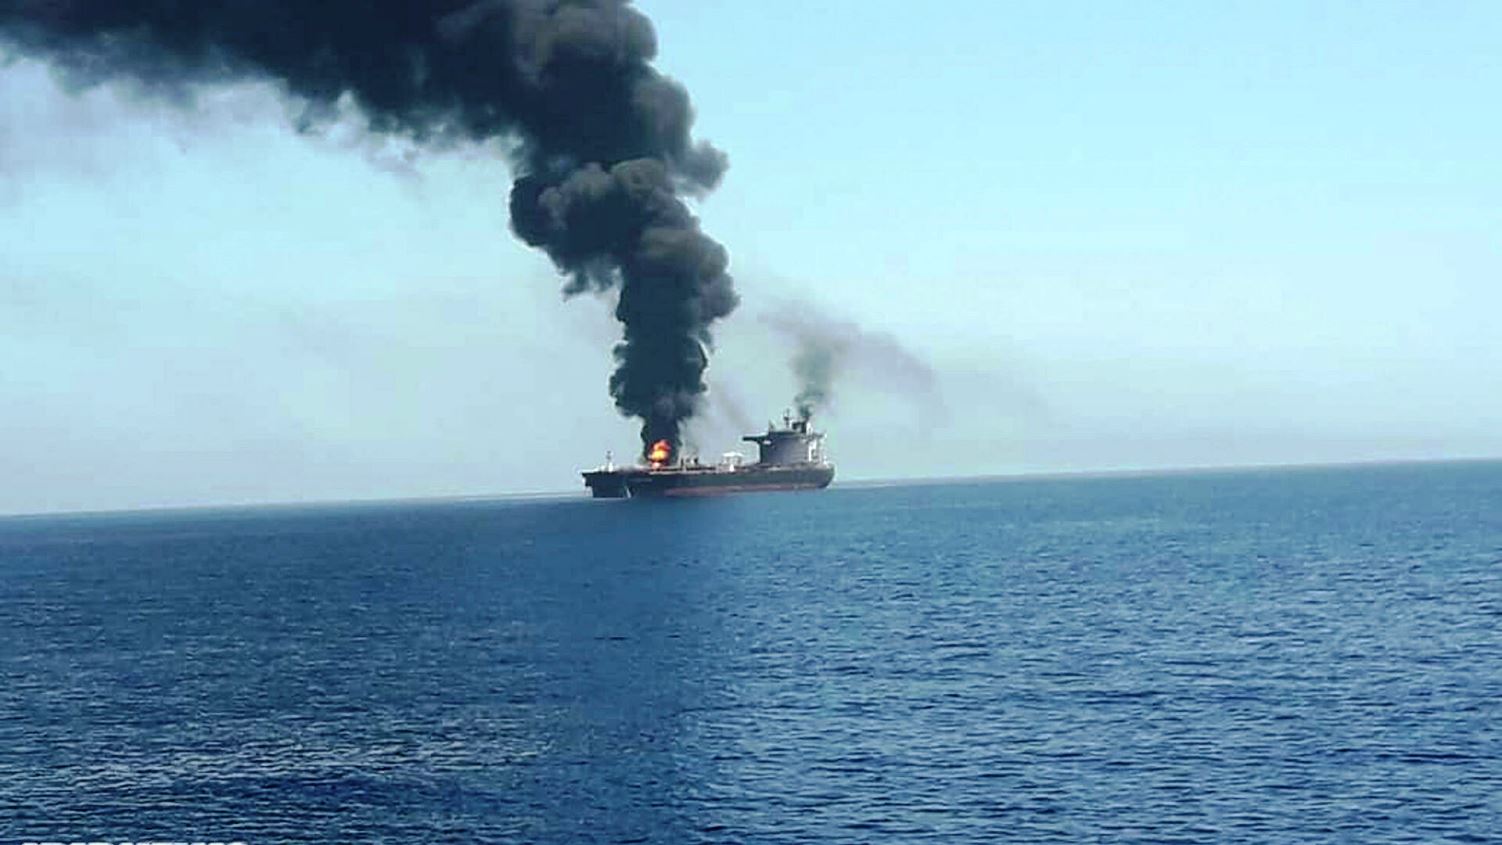 بعد حادثة السفينة الإسرائيلية.. نتنياهو يتوعد إيران بضرب مواقعها في المنطقة وسوريا أول الأهداف